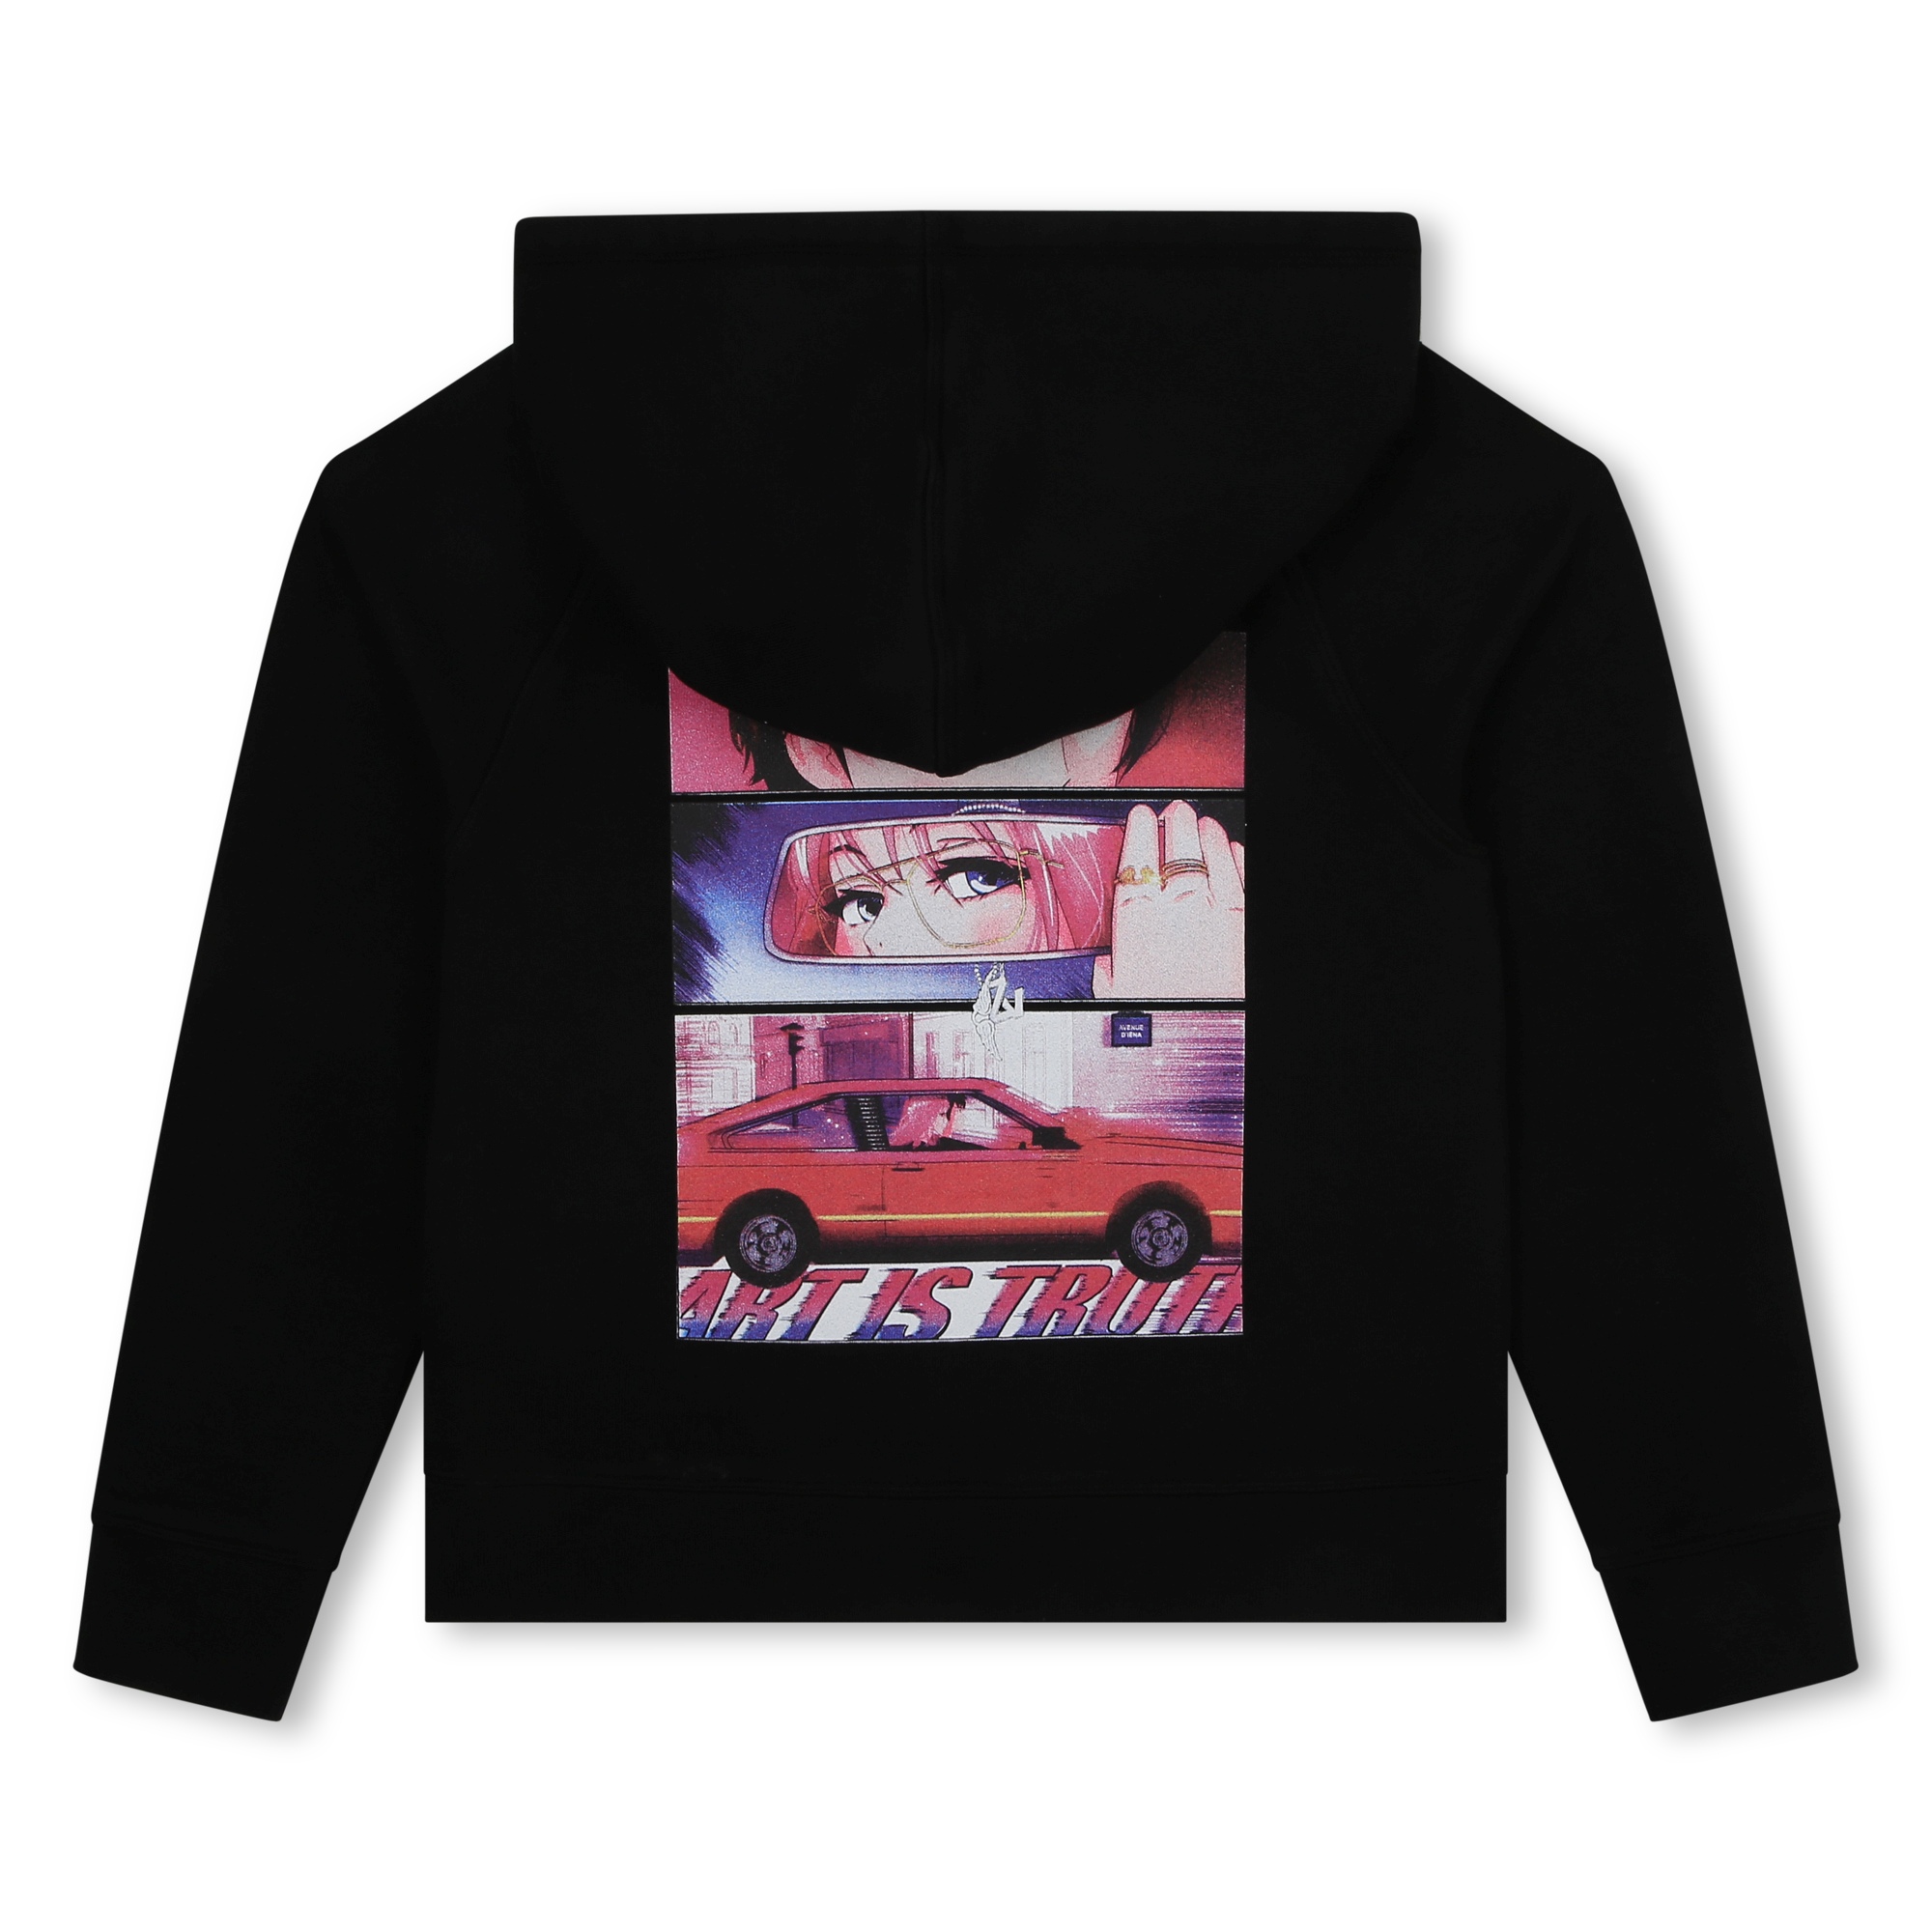 Hooded cotton sweatshirt ZADIG & VOLTAIRE for GIRL